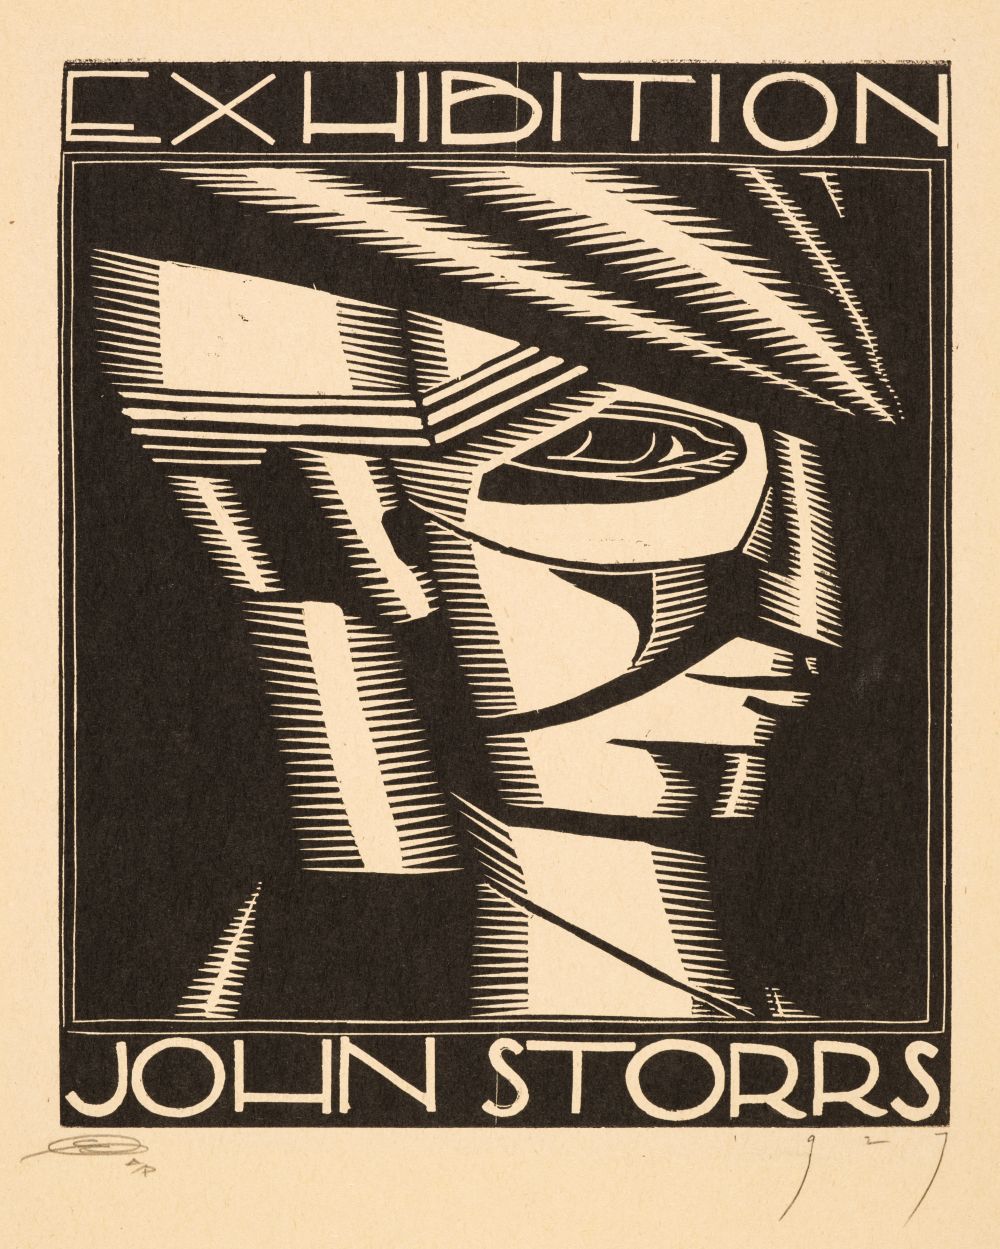 * Storrs (John Bradley, 1885-1956). Exhibition John Storrs, 1927, woodcut